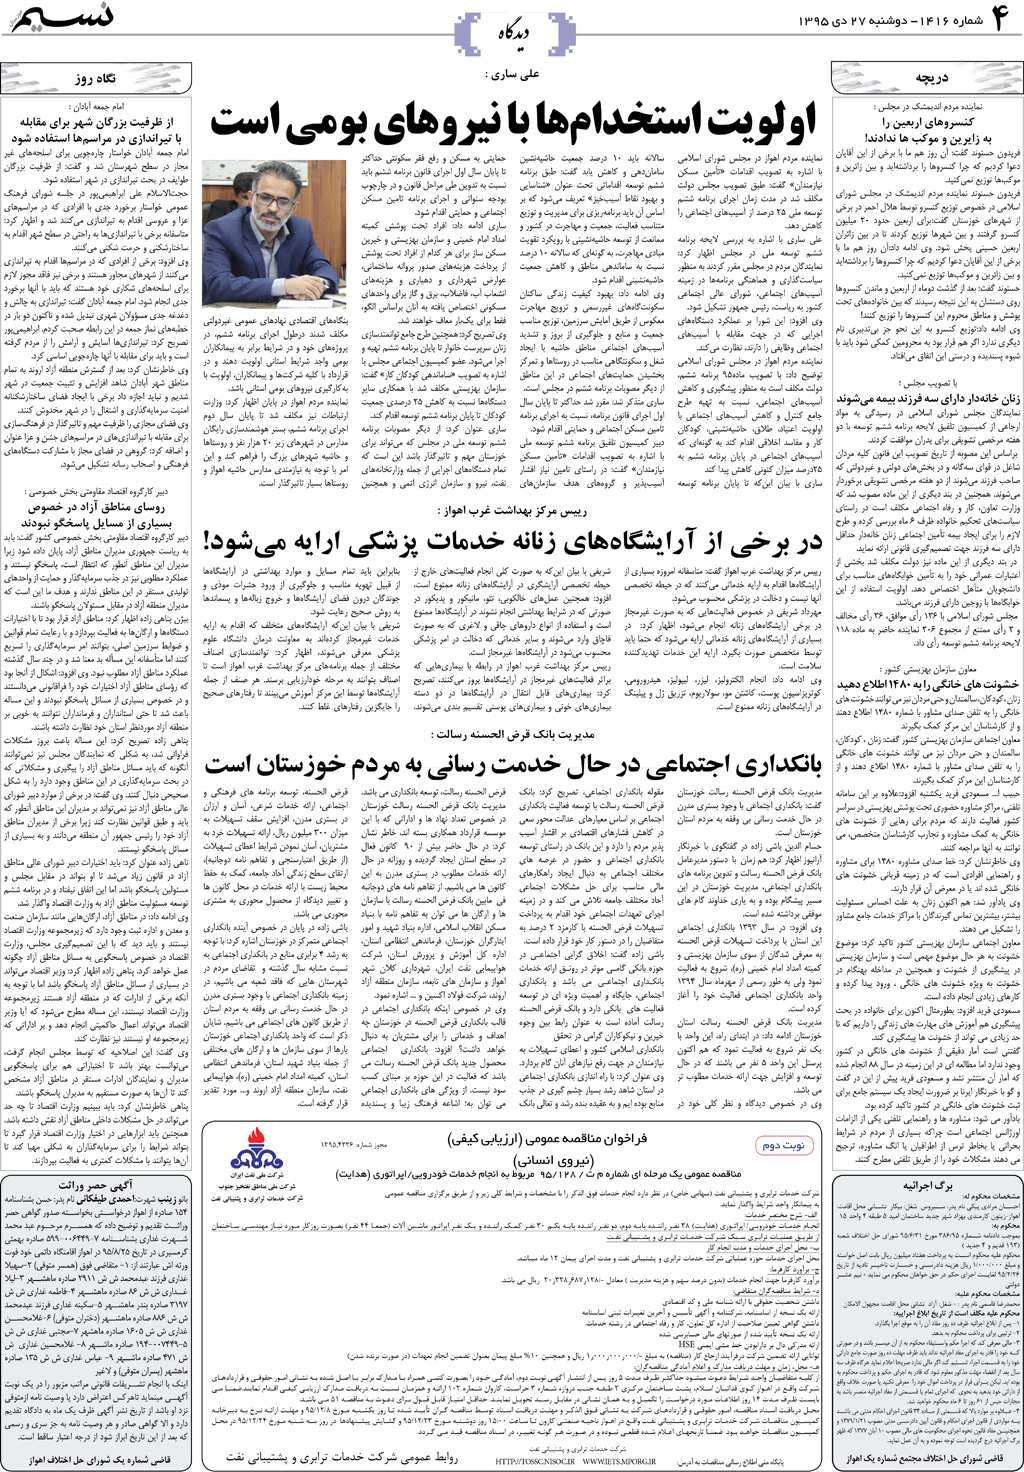 صفحه دیدگاه روزنامه نسیم شماره 1416